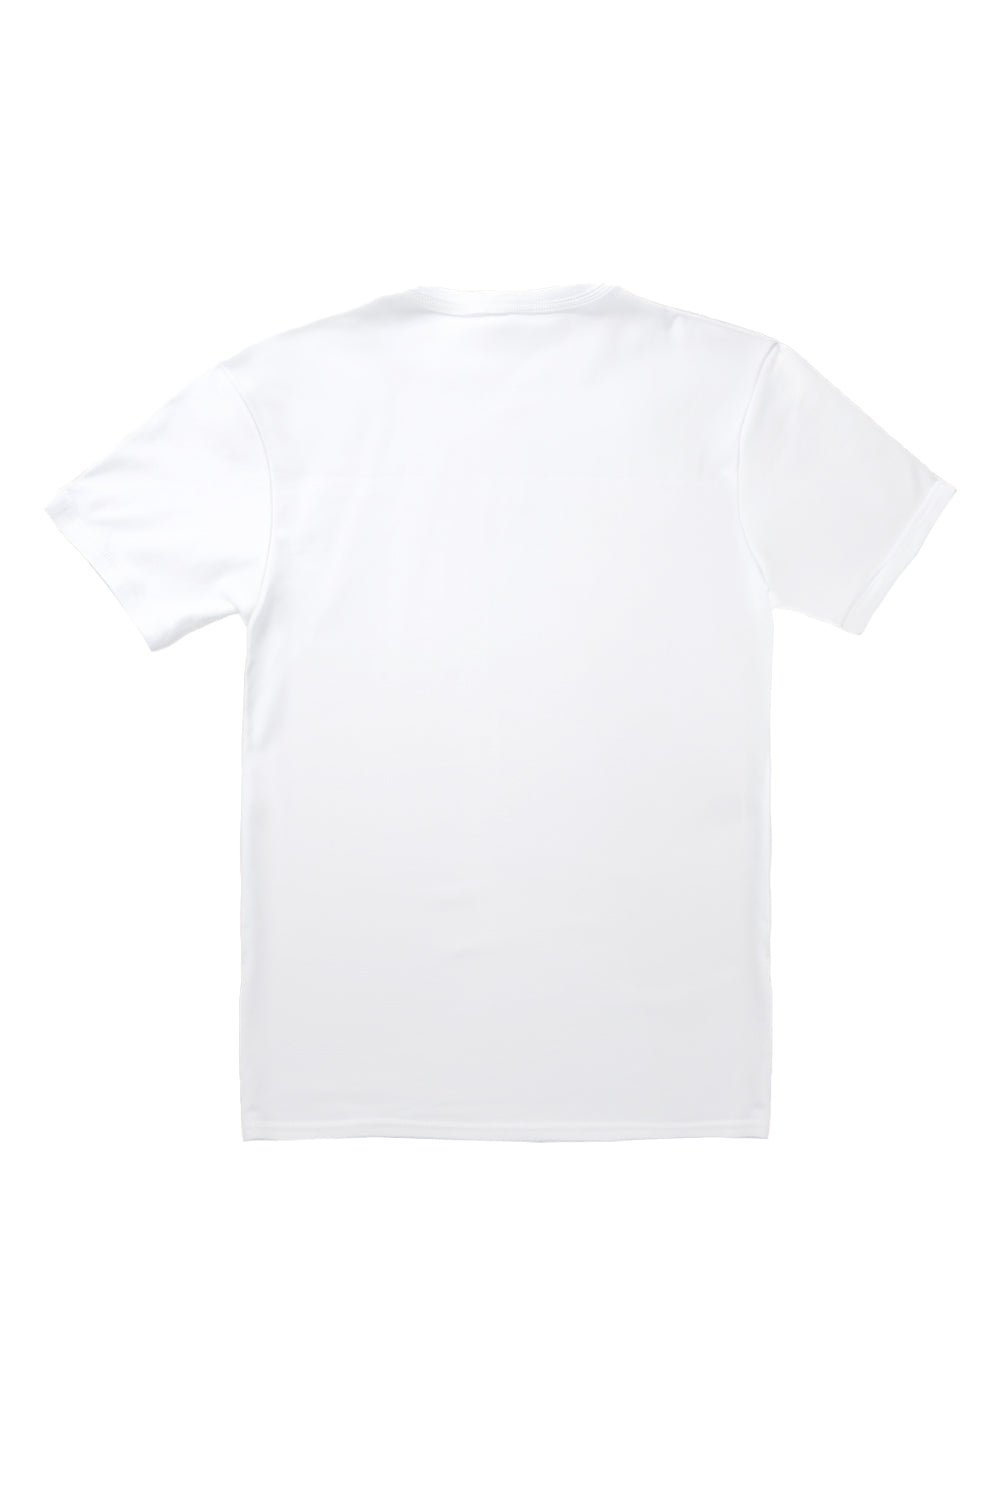 Yeehaw Wild West T-Shirt in White (Custom Packs)